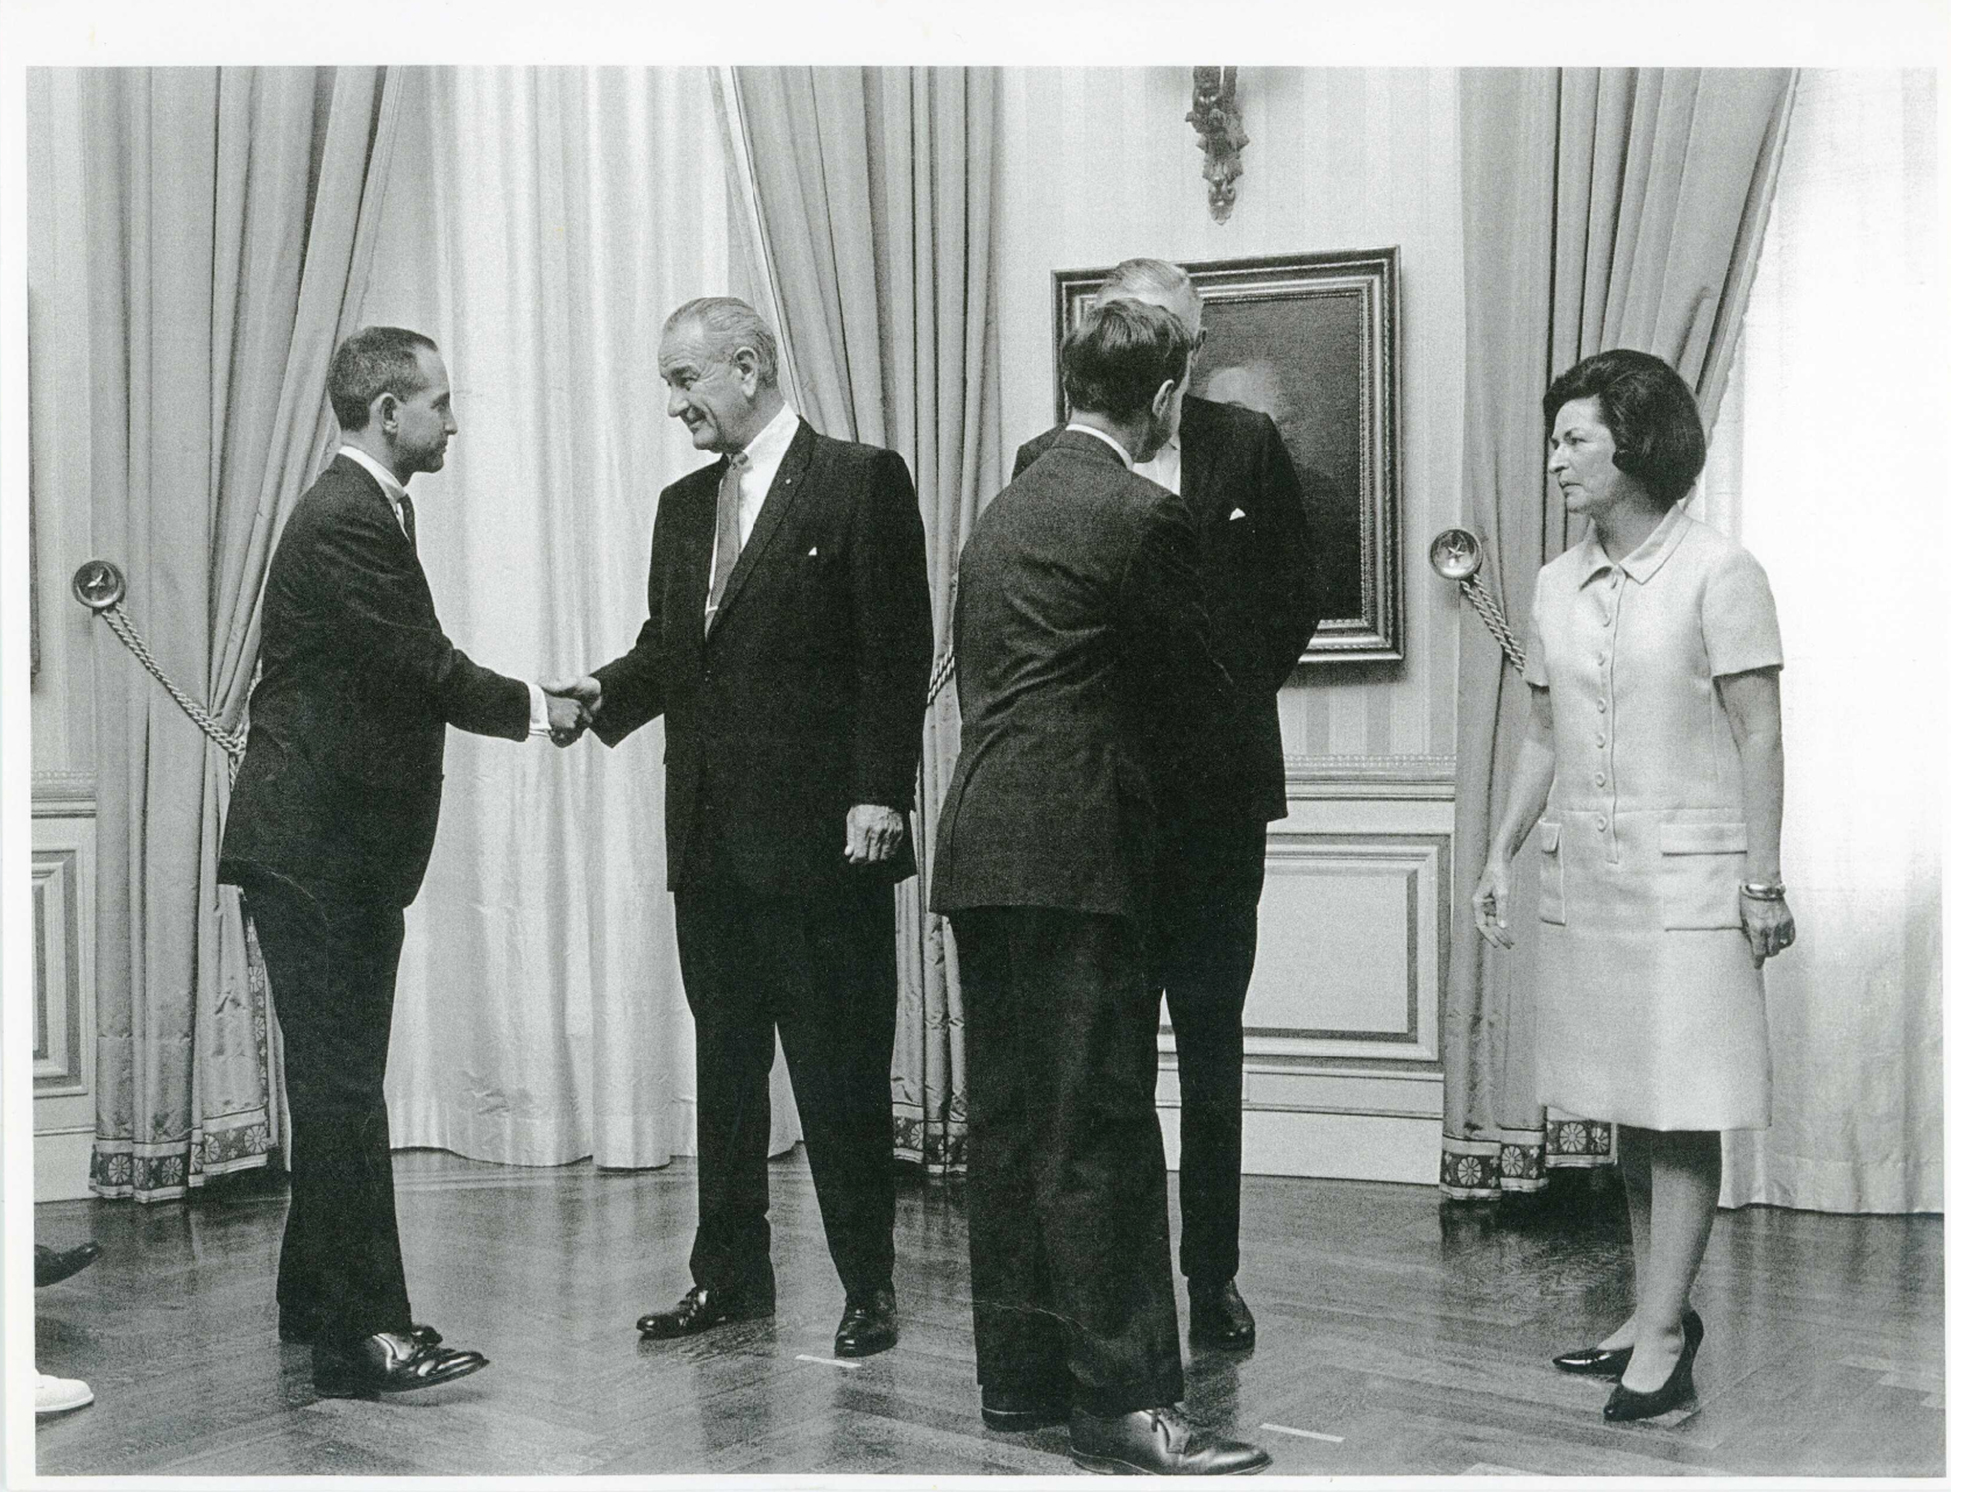 Ellsberg schüttelt Lyndon Baines Johnson die Hand, ca.  1964. Mit freundlicher Genehmigung von Daniel Ellsberg Papers, Robert S. Cox Special Collections und University Archives Research Center, UMass Amherst Libraries